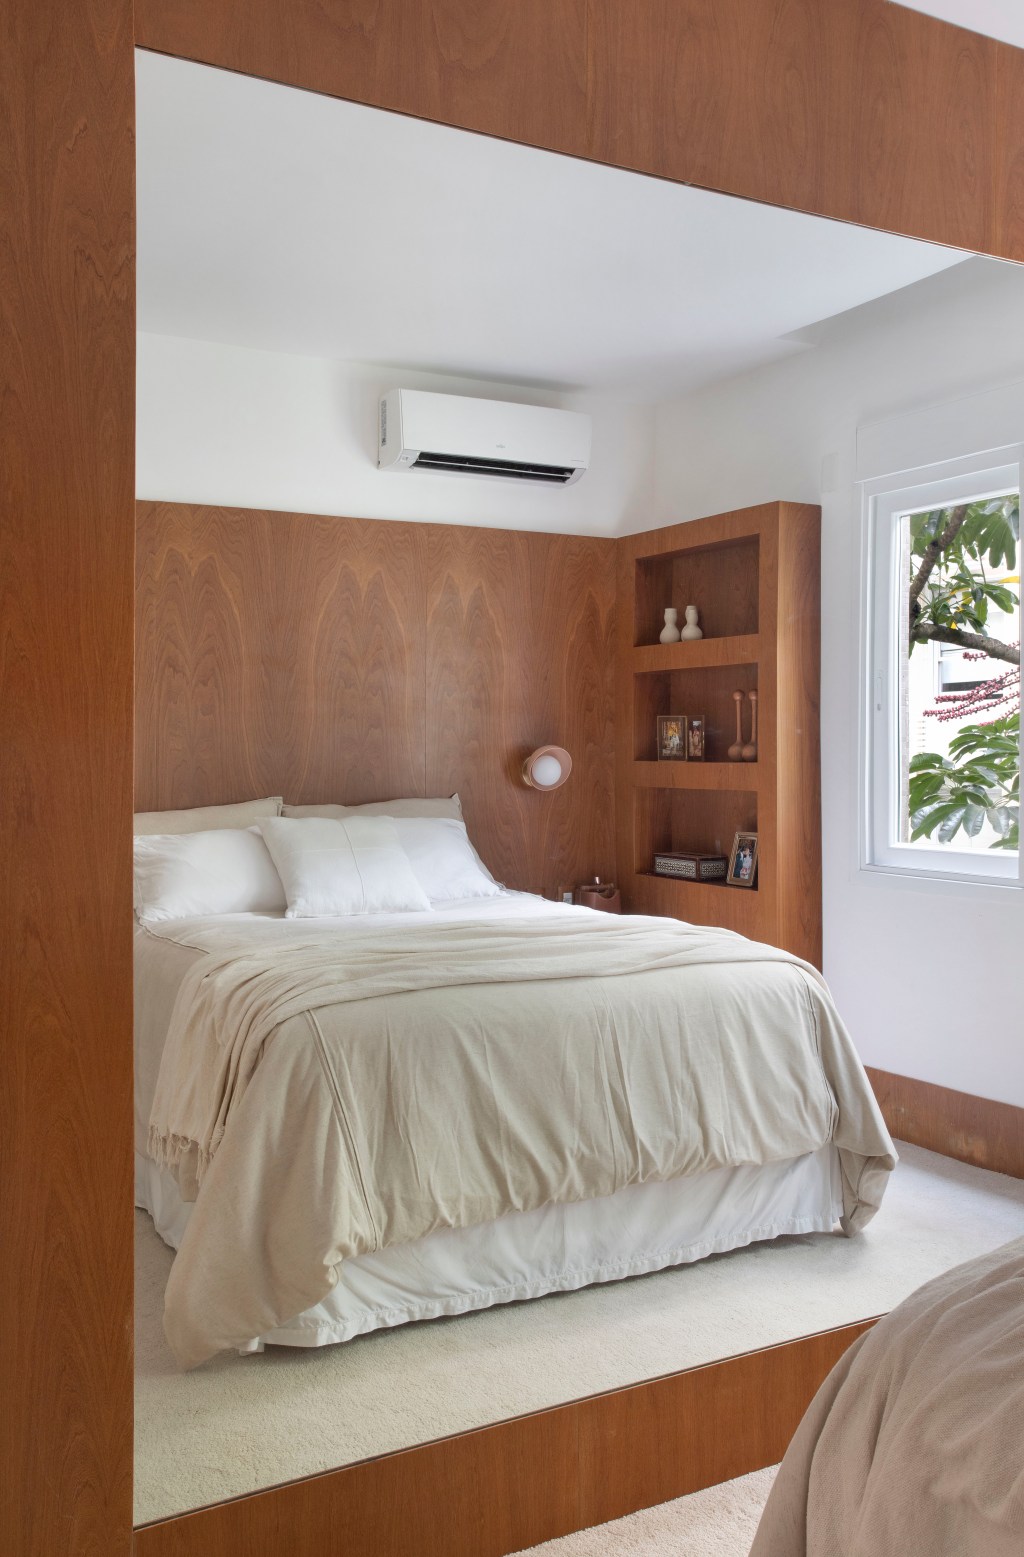 Apartamento em Ipanema é repleto de mobiliário de design brasileiro. Projeto de Bianca Da Hora. Na foto, quarto de casal com painel de madeira e tapete.